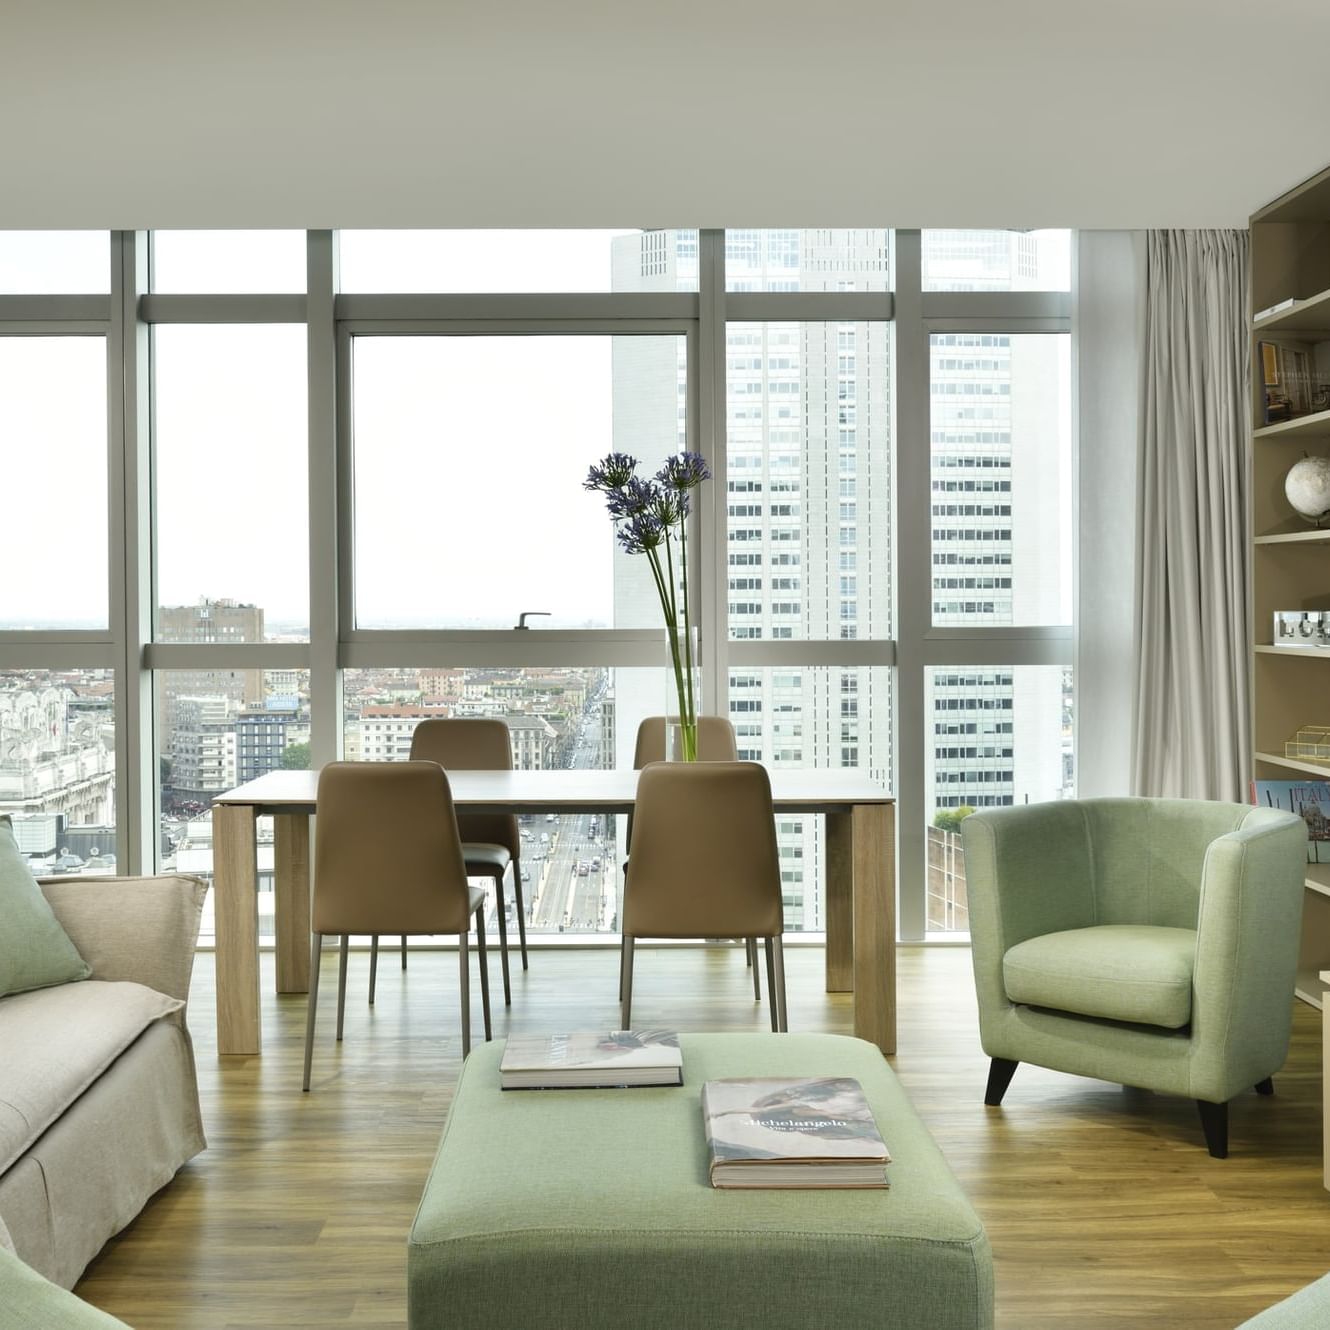 Torre Galfa Milano Luxury Apartments | UNA Esperienze